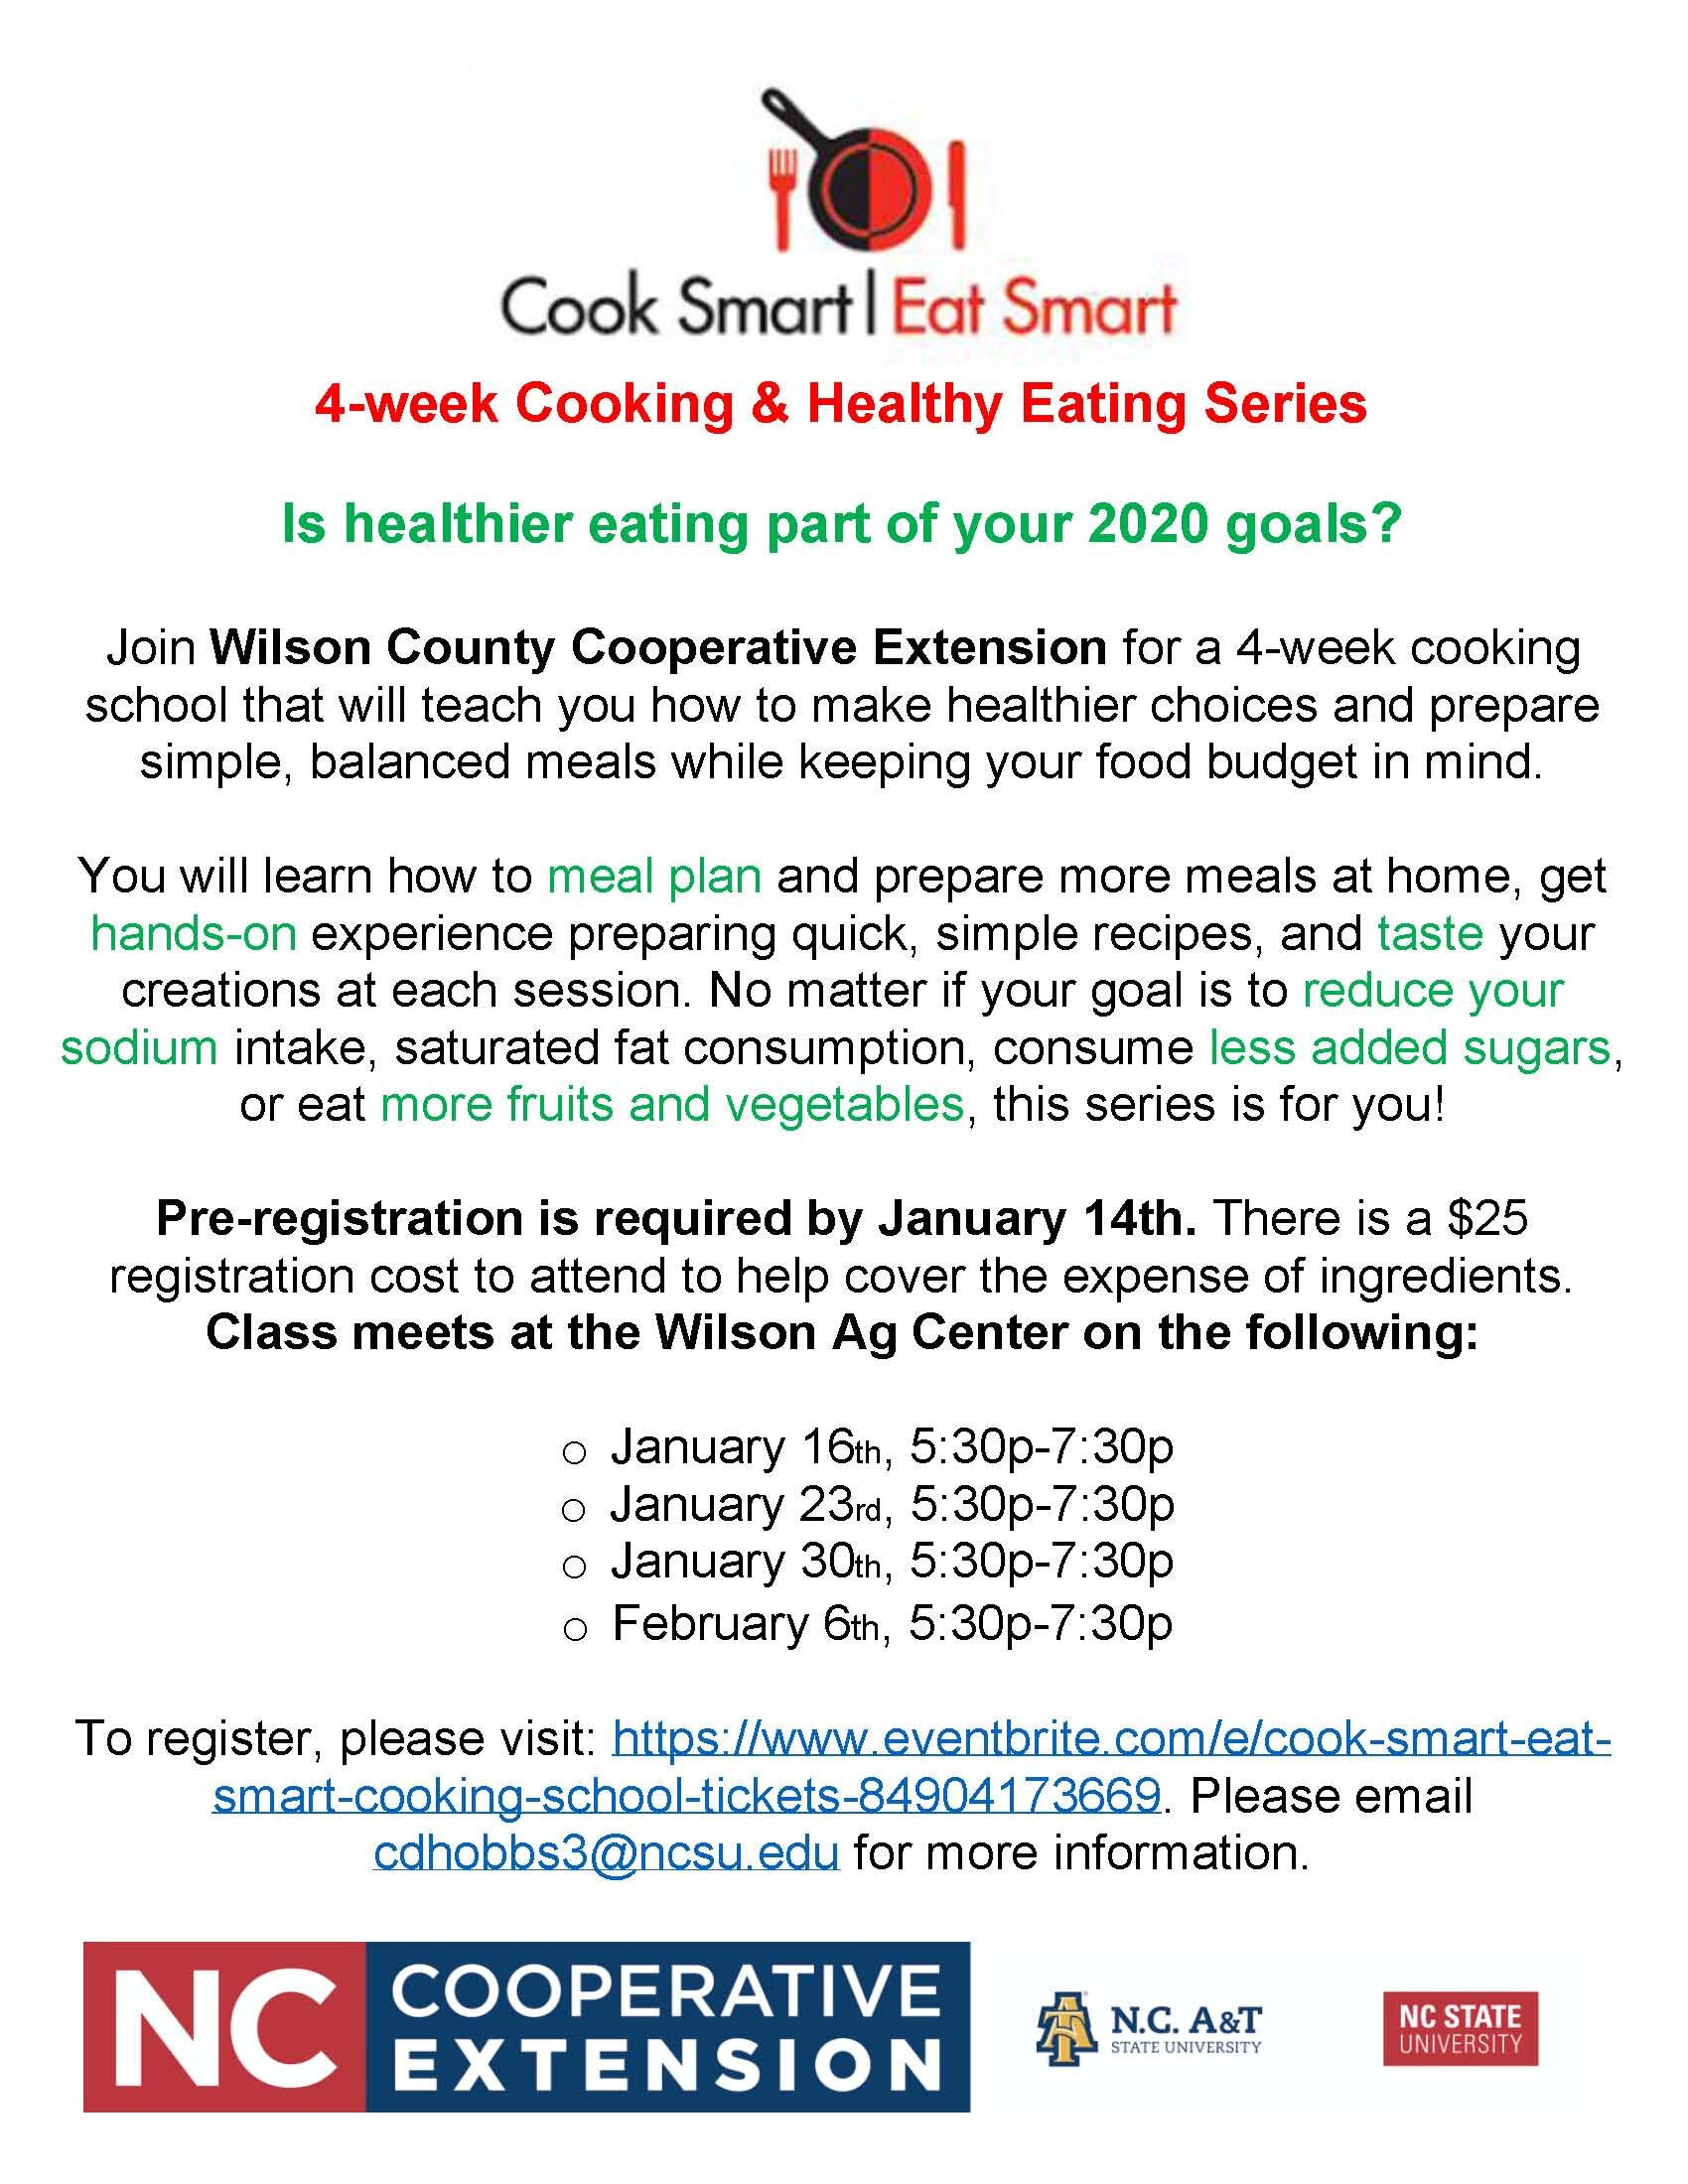 Cook Smart Eat Smart.jpg